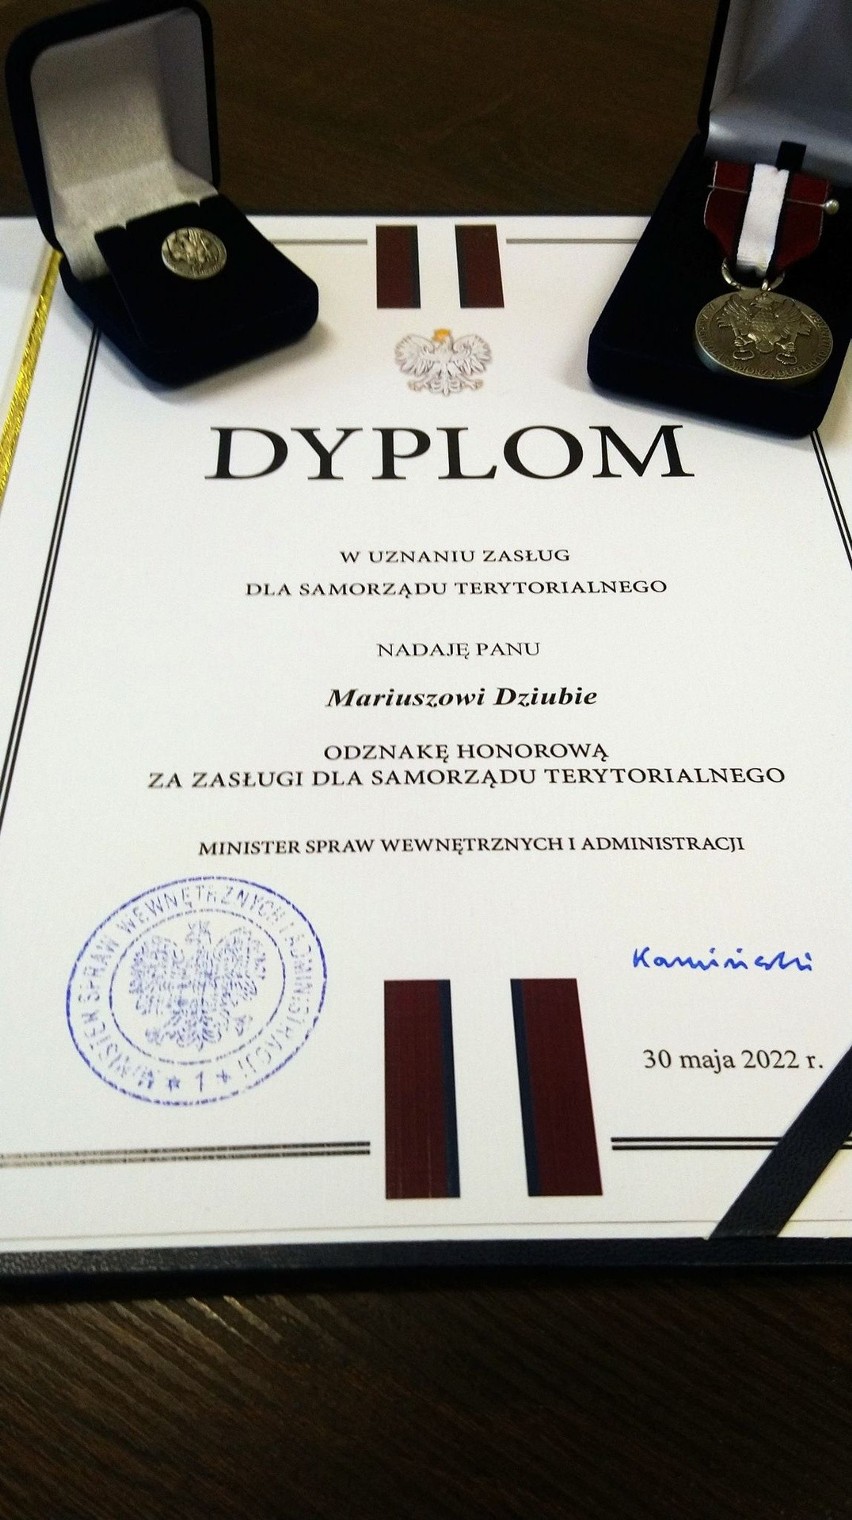 Odznaka honorowa za zasługi dla samorządu dla burmistrza Nowego Miasta nad Pilicą Mariusza Dziuby. Zobaczcie zdjęcia